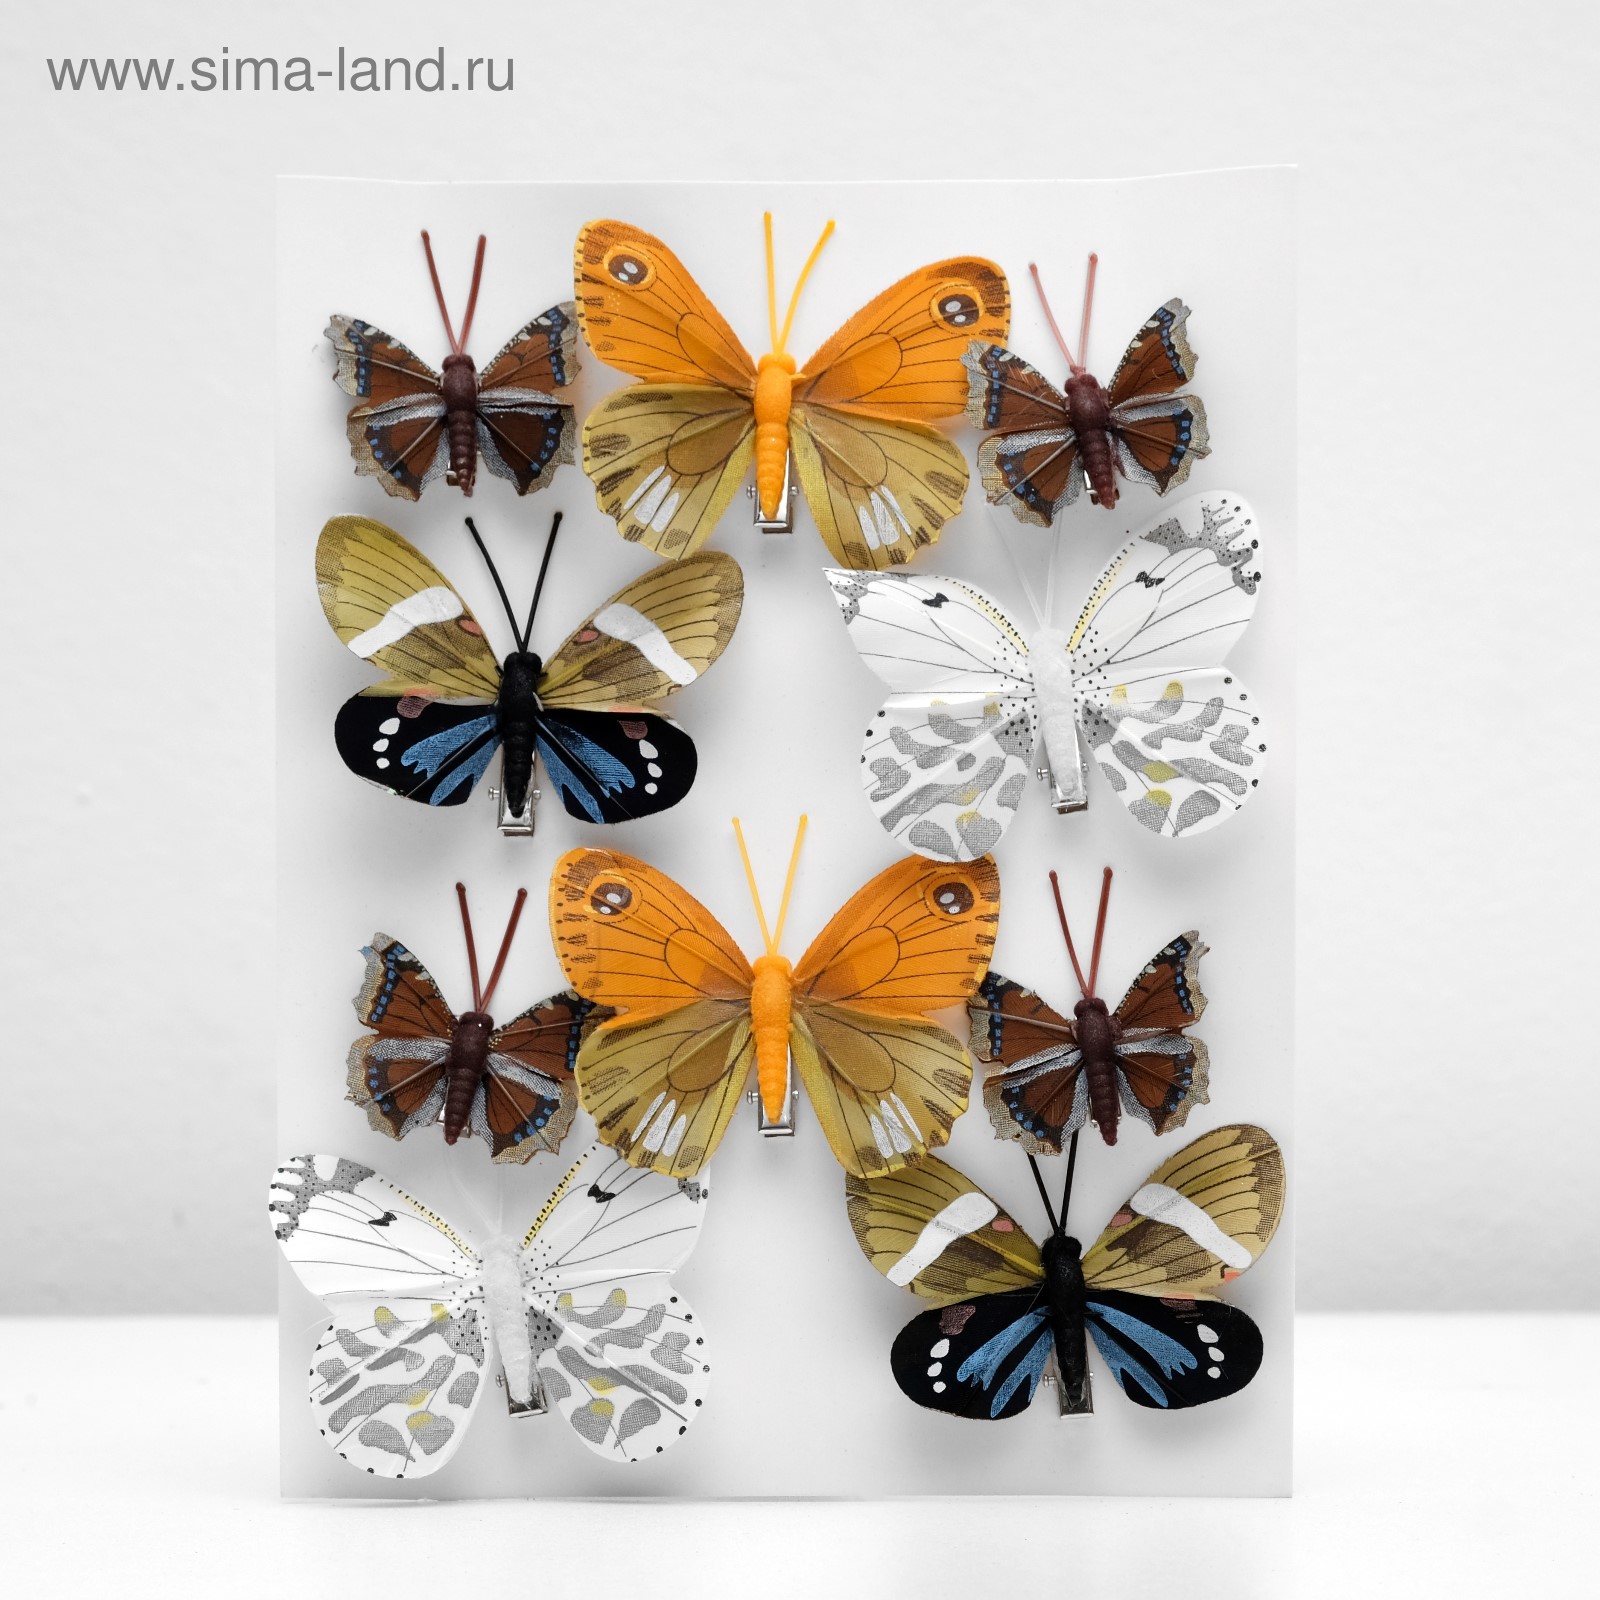 Бабочки серо - розовые из перьев для декора 12 штук.: купить оптом и в розницу